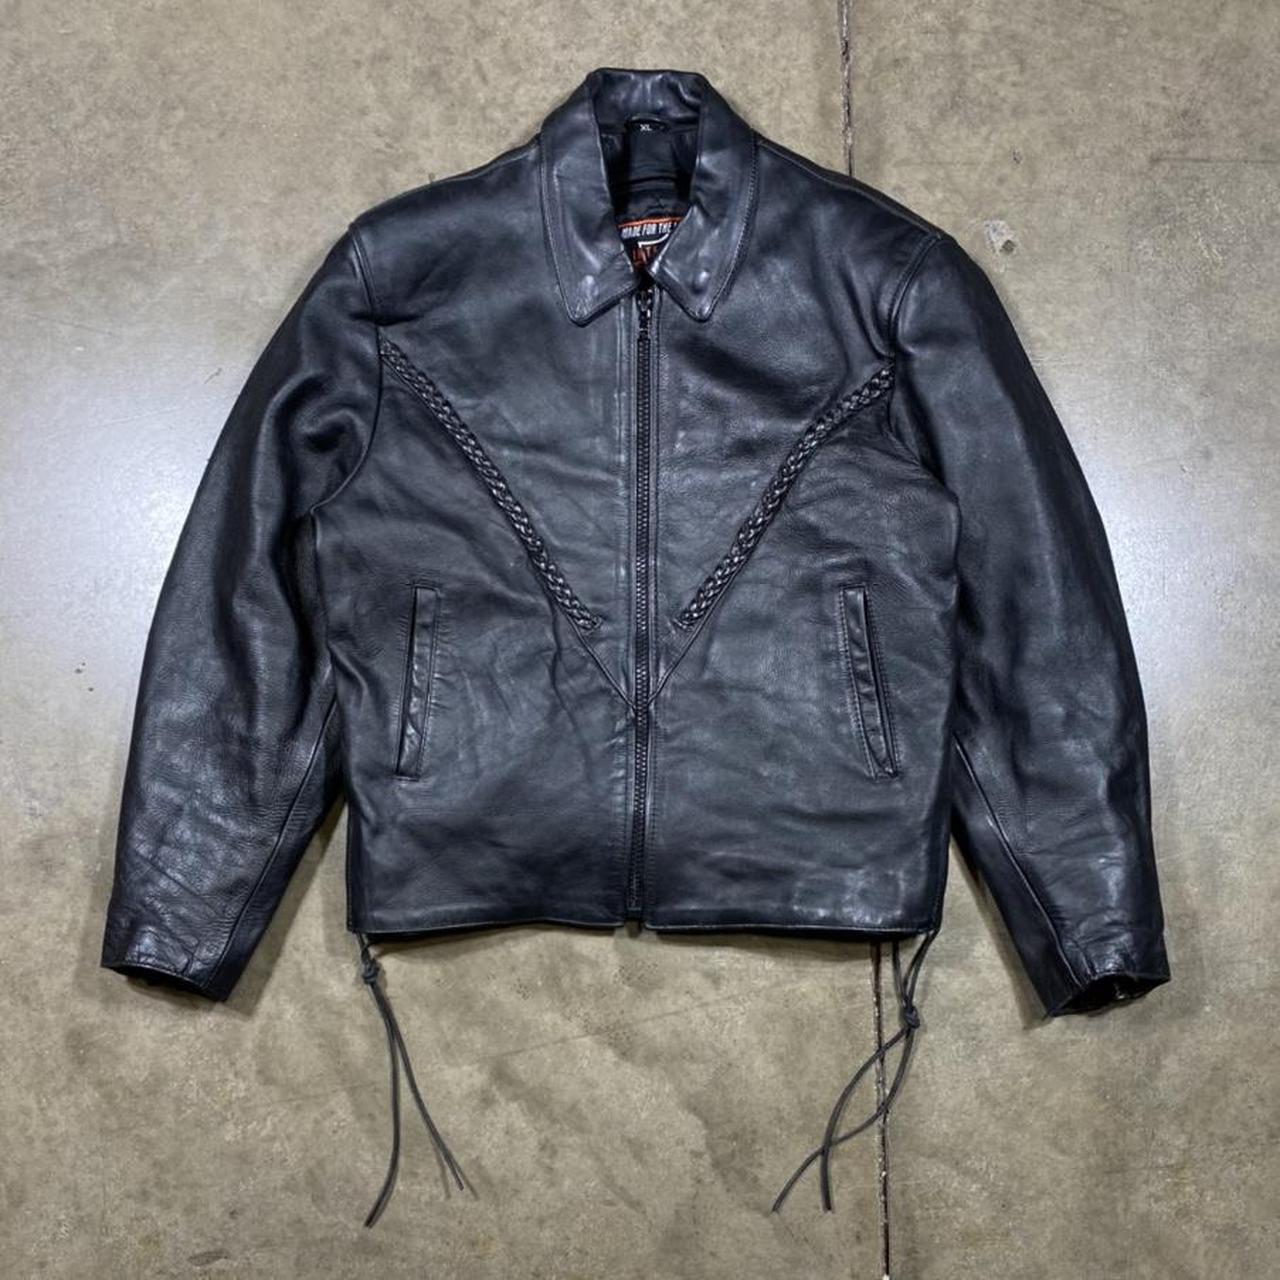 Vintage leather biker jacket. Vintage leather... - Depop